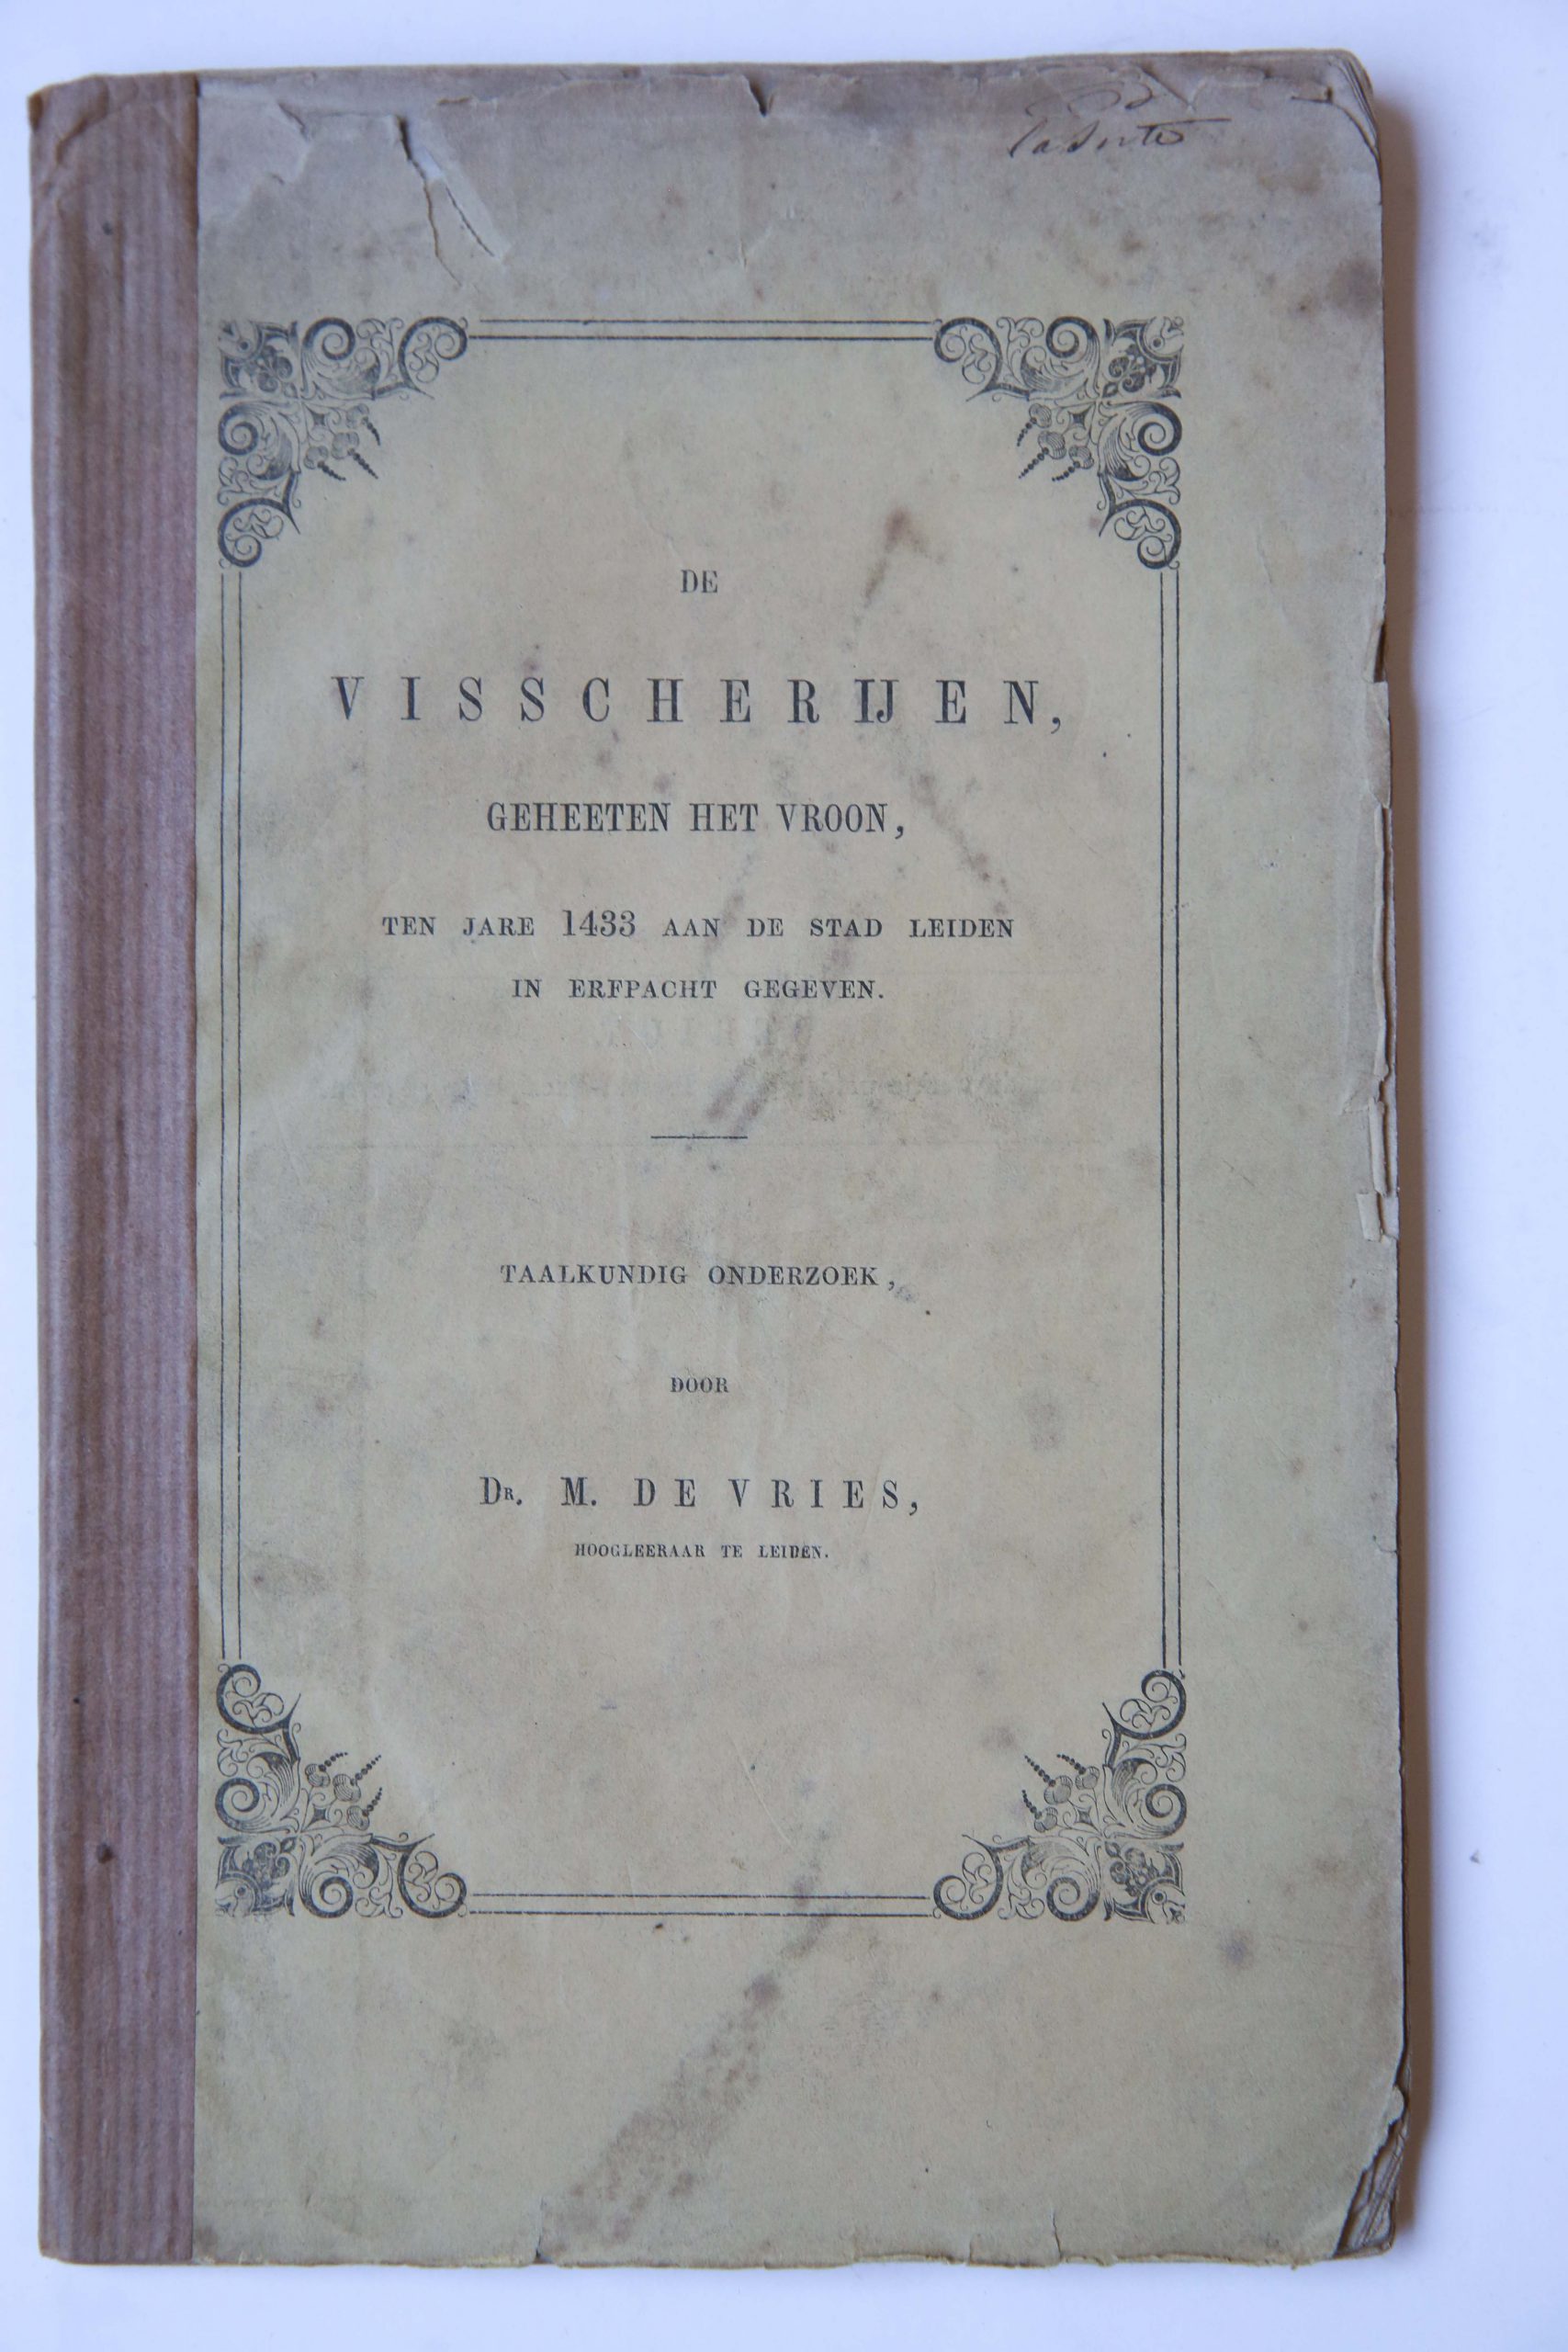 De visscherijen, geheeten Het Vroon, ten jare 1433 aan de stad Leiden in erfpacht gegeven. Taalkundig onderzoek, Leiden 1858, 86 pag.